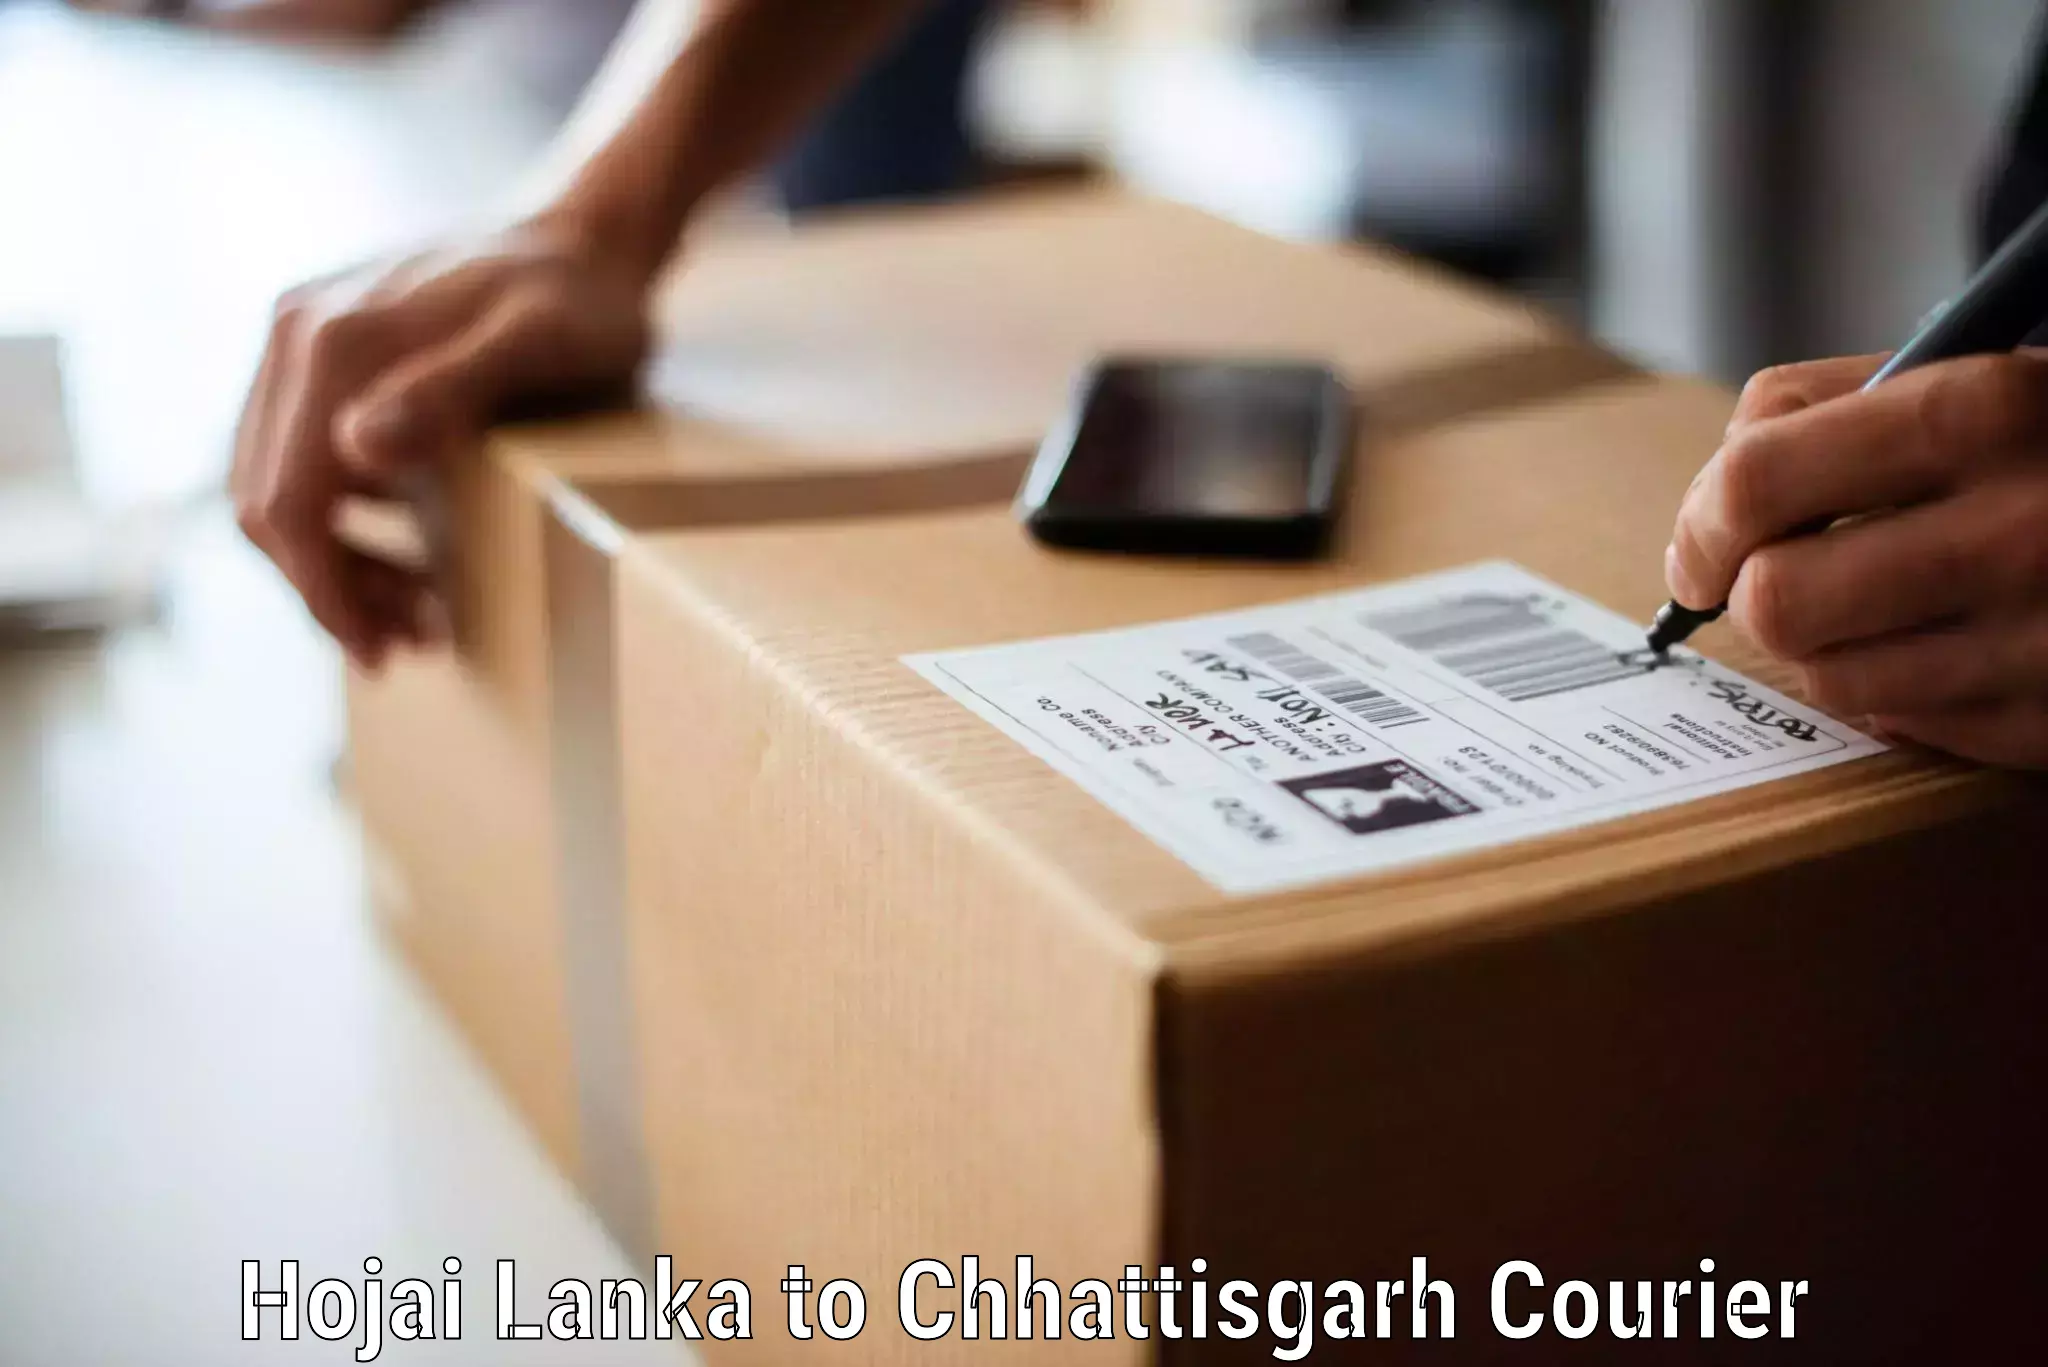 Efficient moving company Hojai Lanka to Shivrinarayan